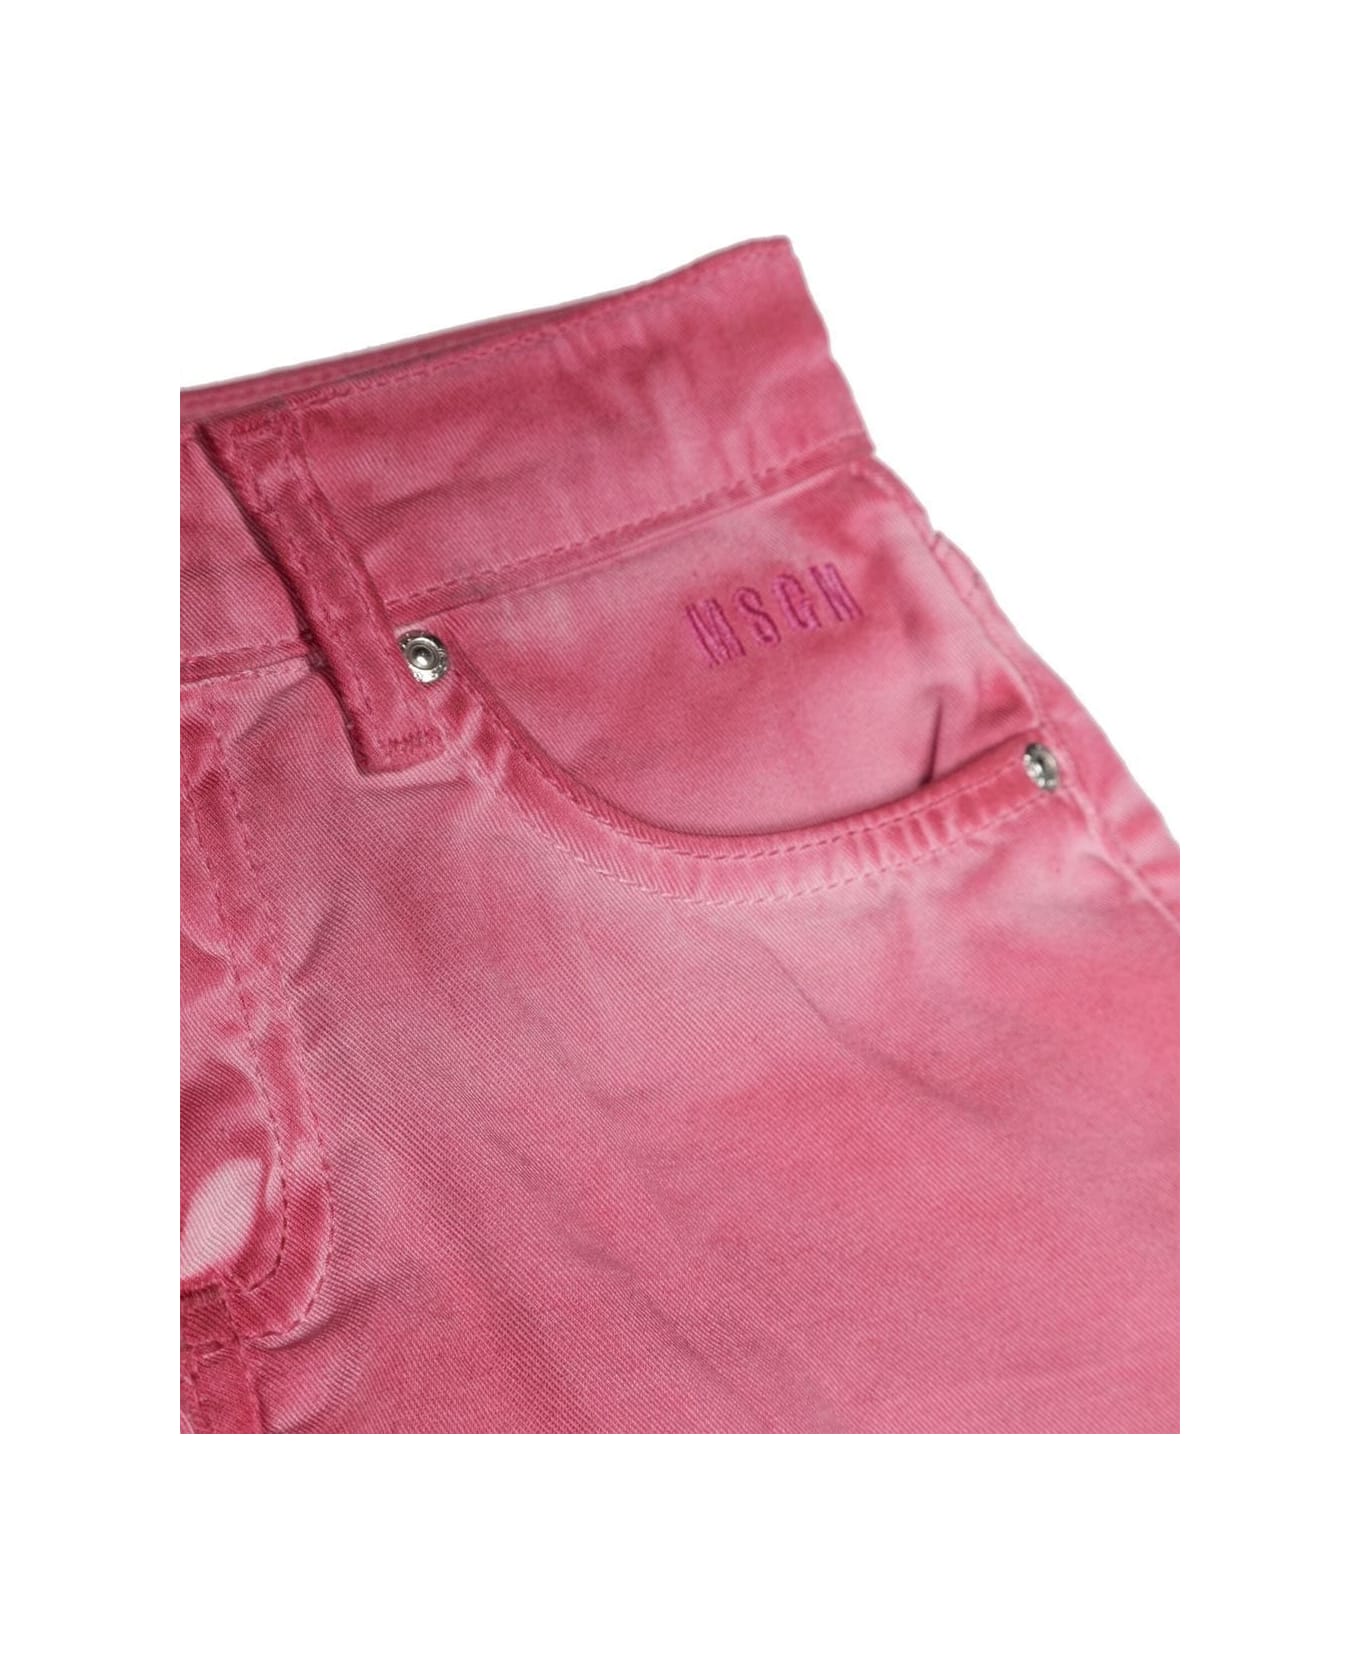 MSGM Pink Denim Shorts - PINK ボトムス